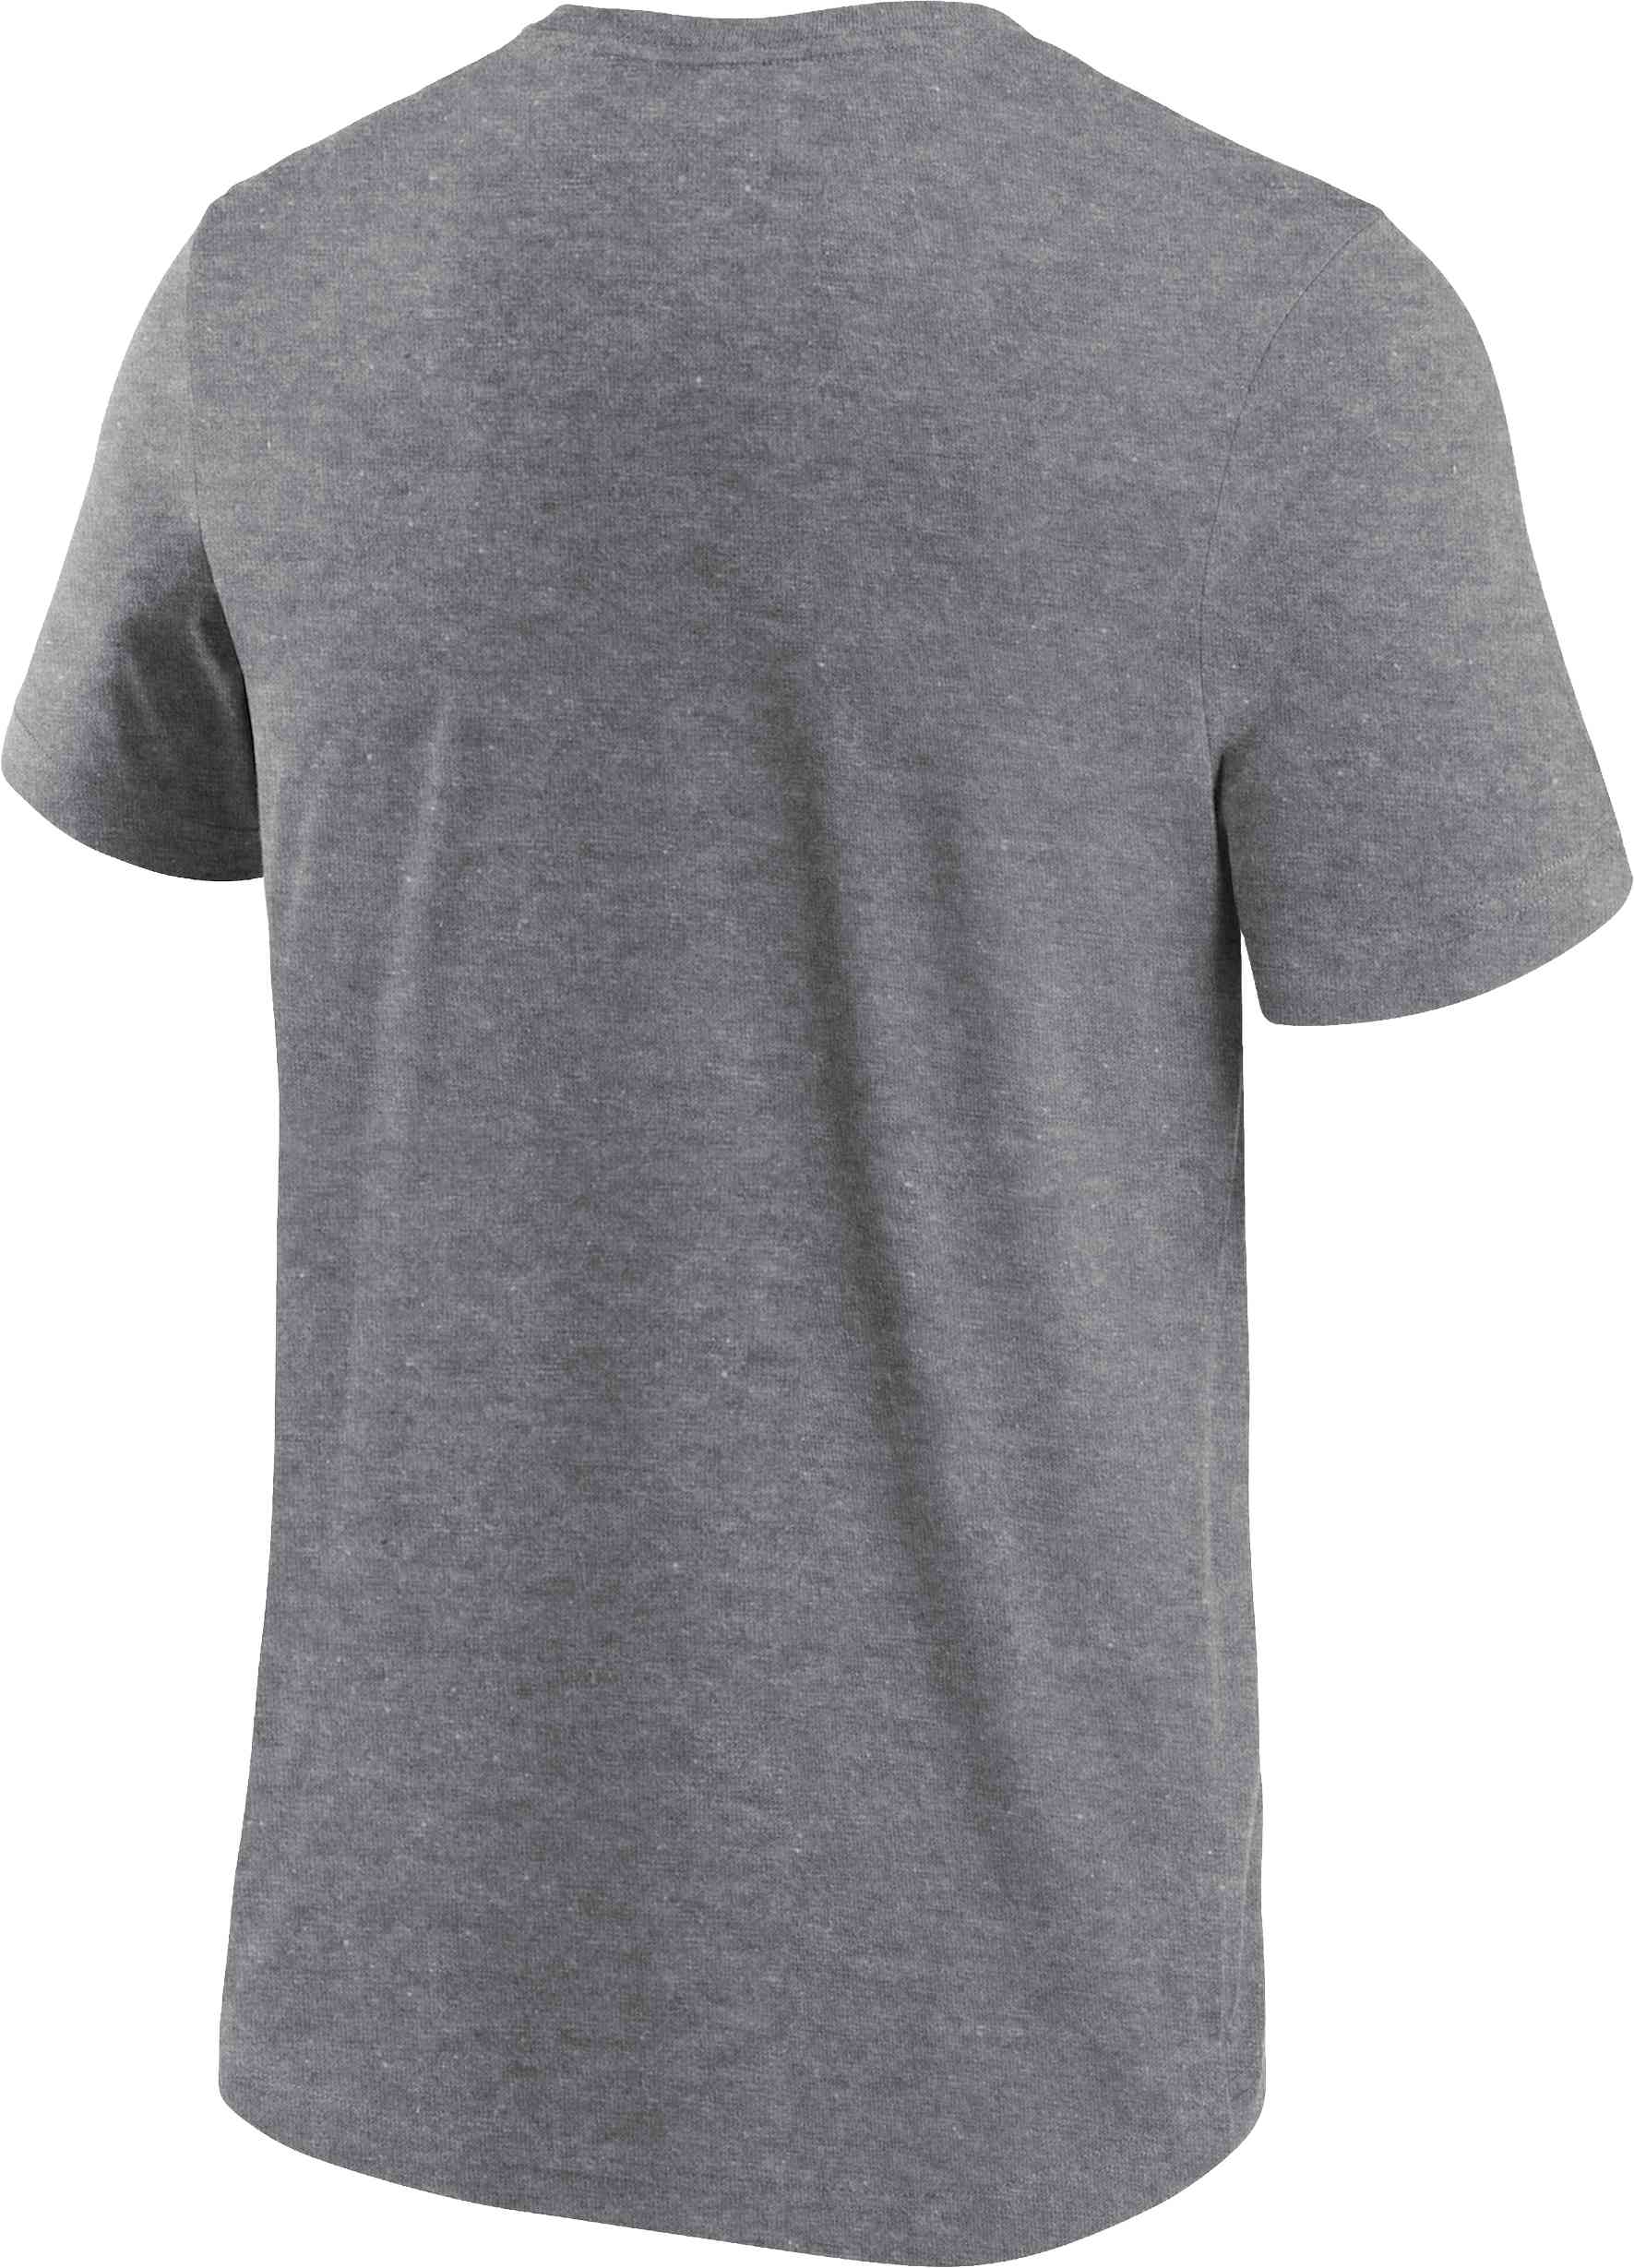 Fanatics - NFL Denver Broncos Primary Logo Graphic T-Shirt